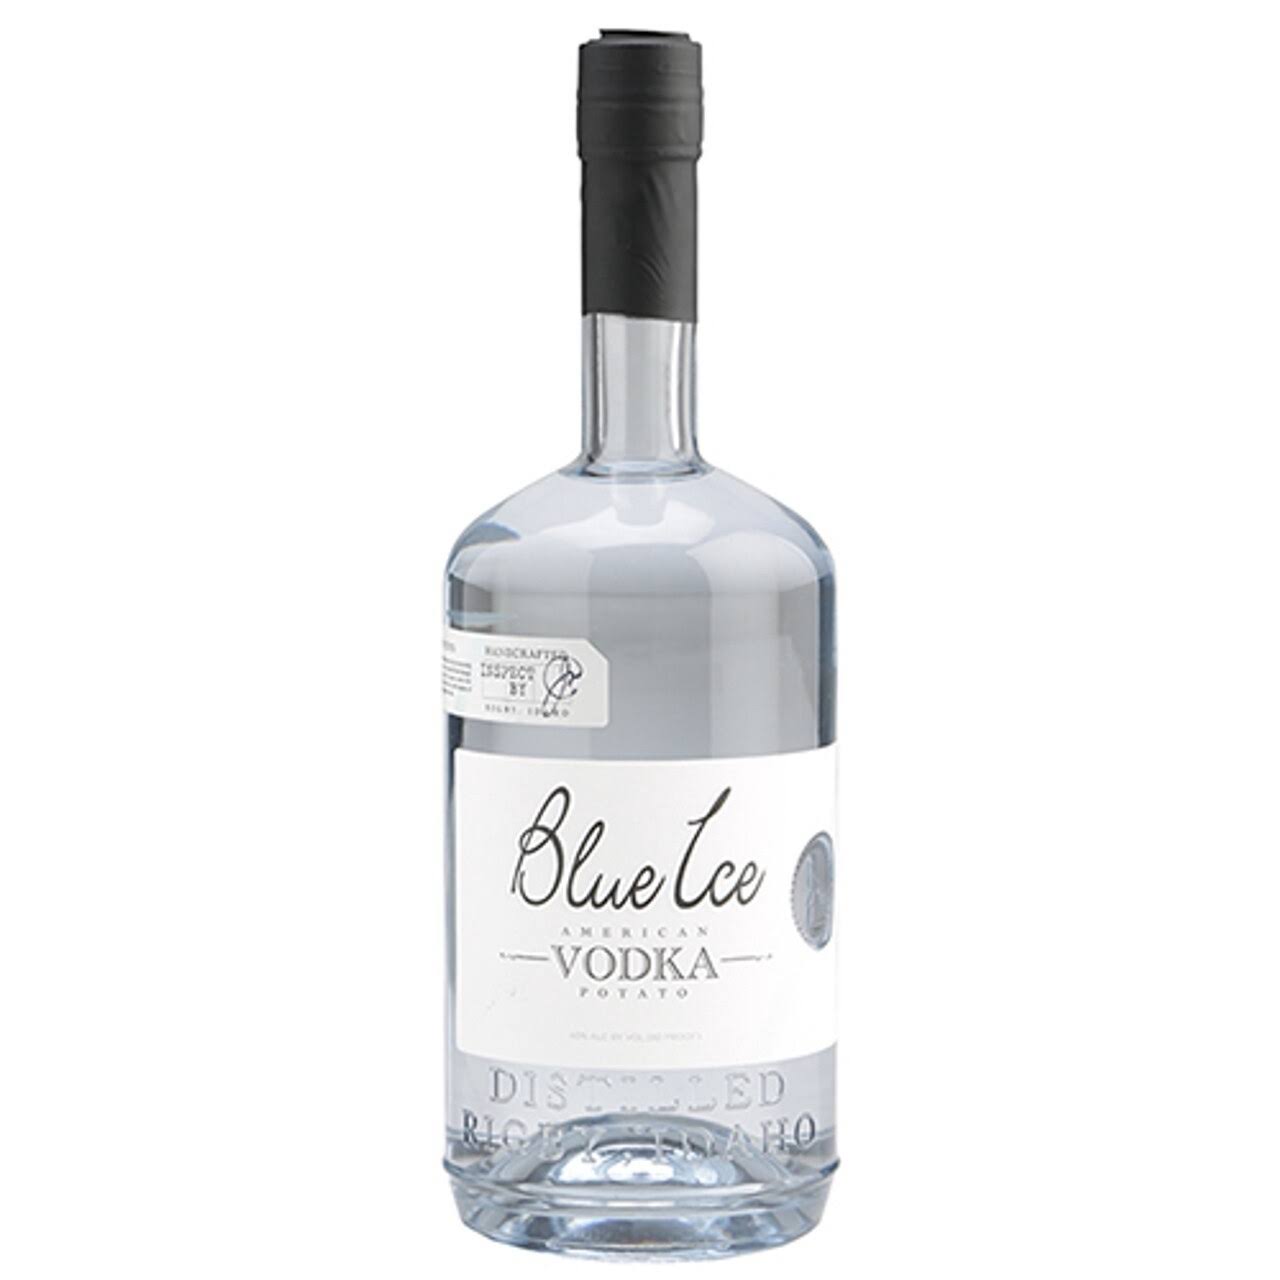 Blue Ice Potato Vodka 1L